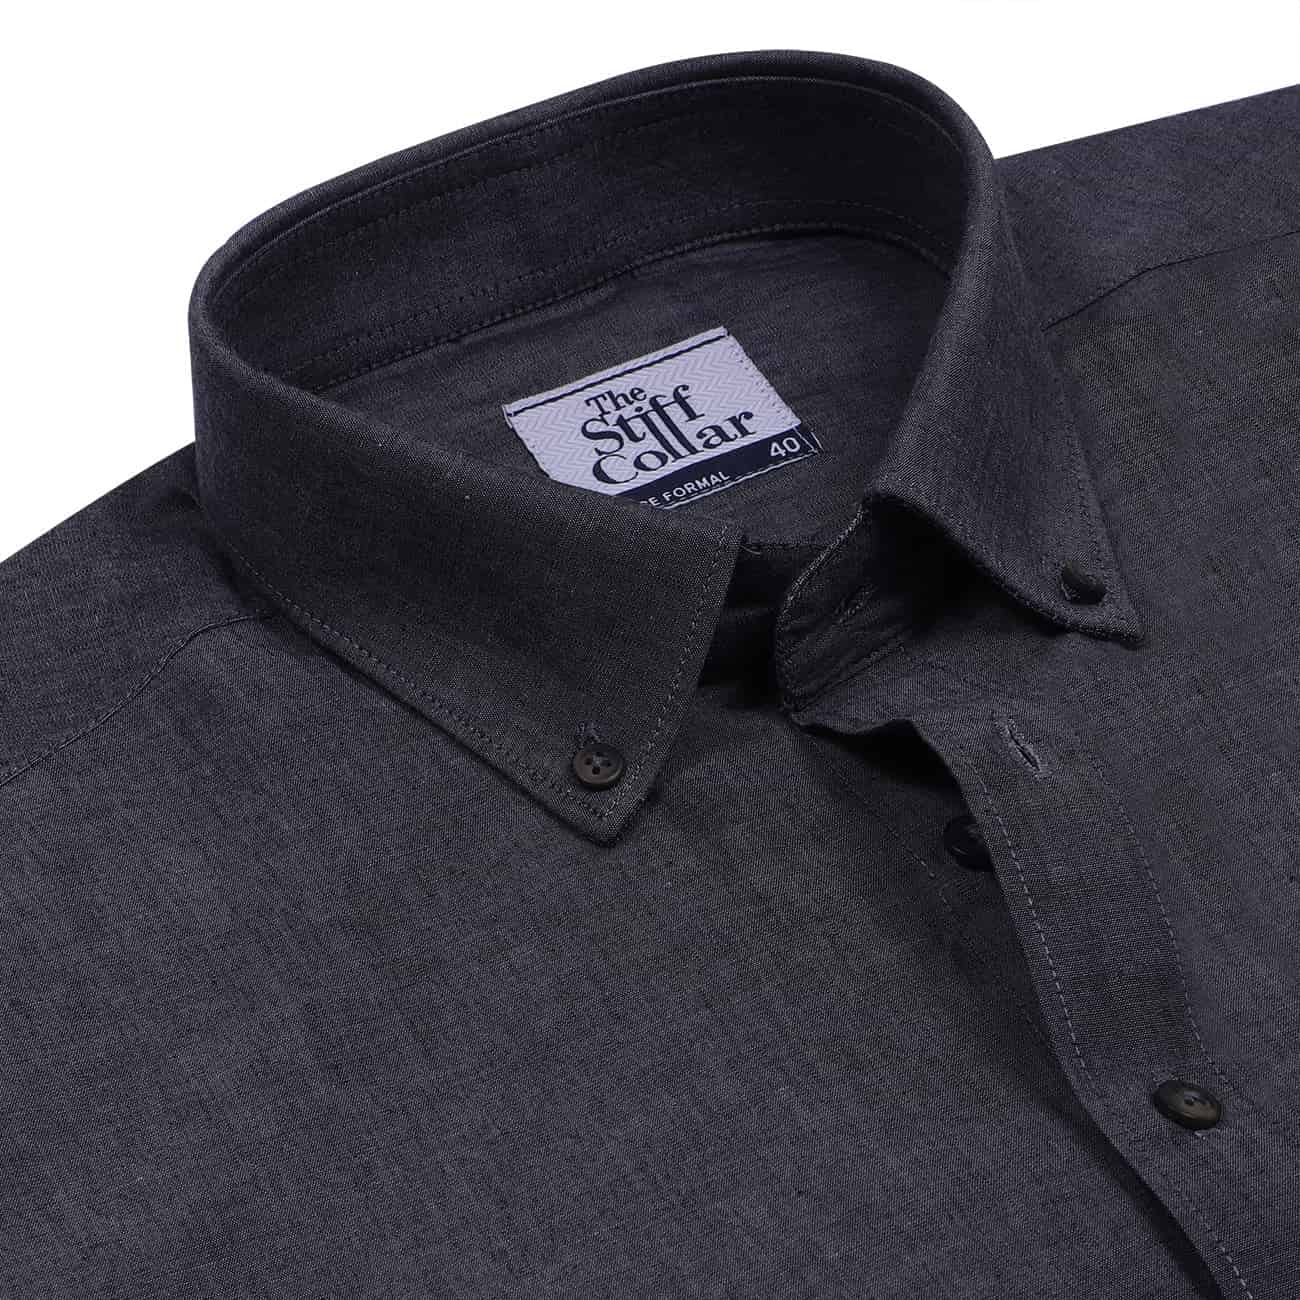 Charcoal Black Oxford Button Down Cotton Shirt